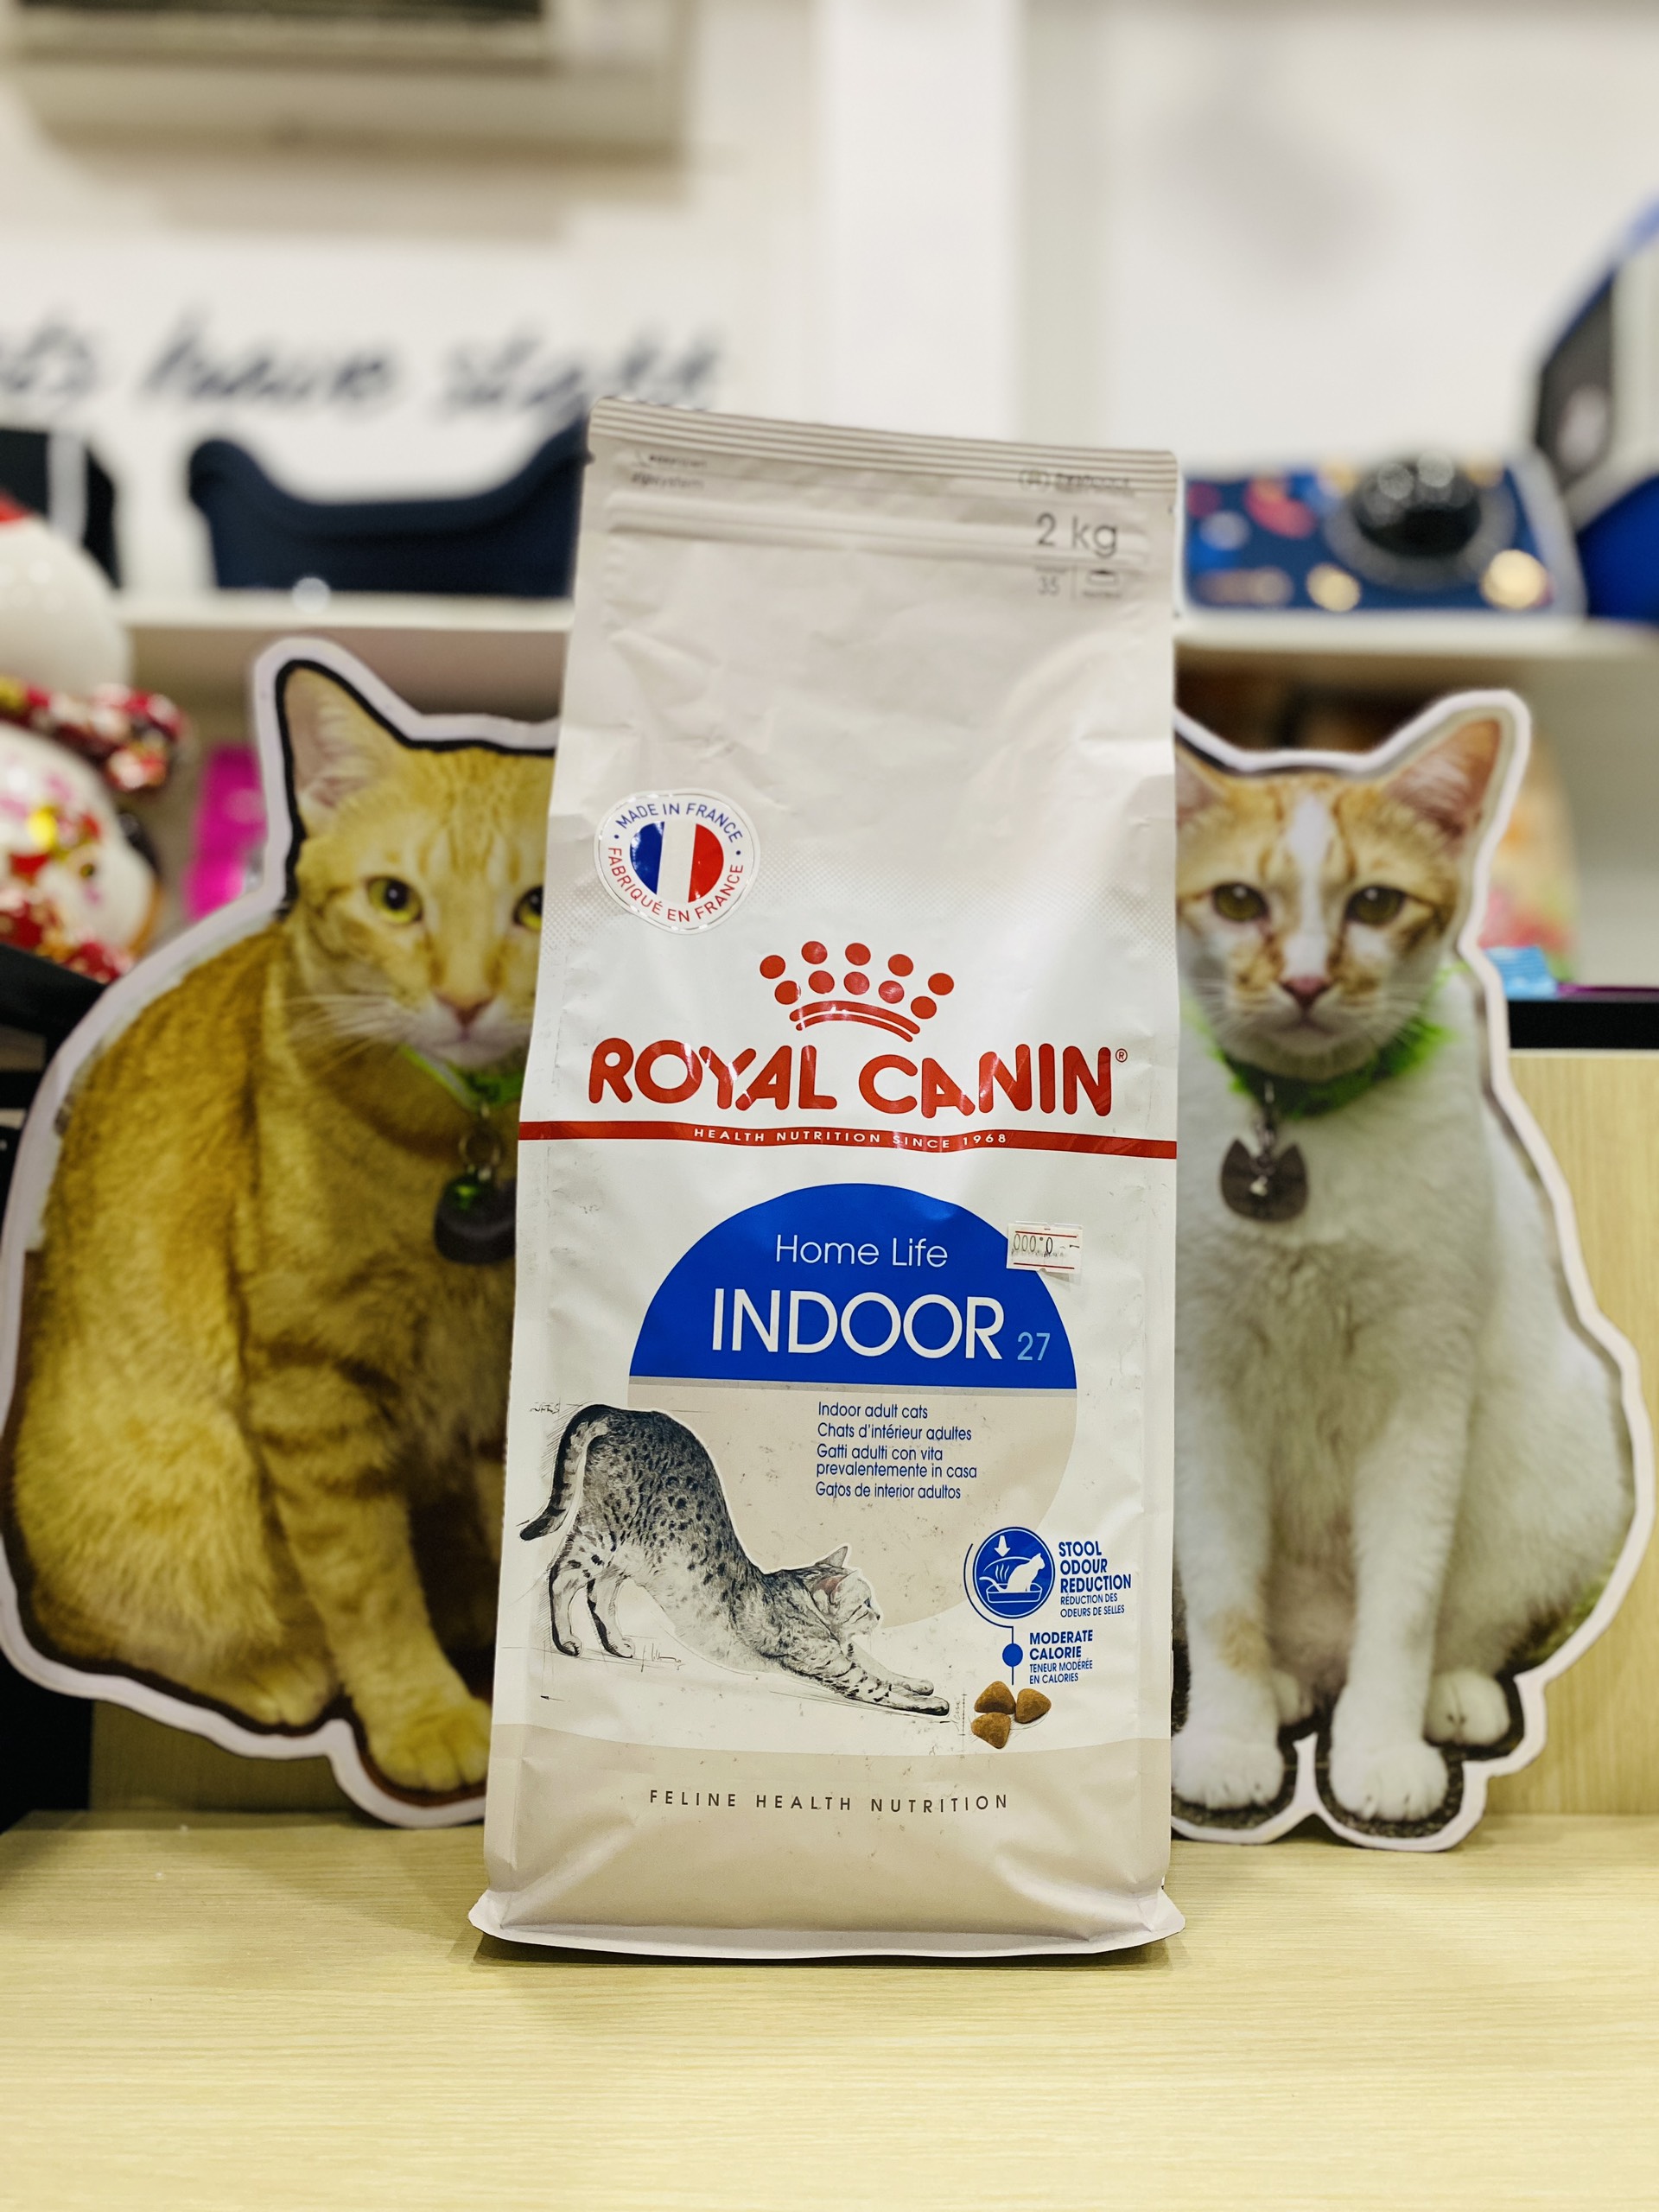 ROYAL CANIN Indoor 27 _Thức Ăn Hạt Cho Mèo Từ 1 - 7 tuổi [2KG] | Mèo Ít Vận Động